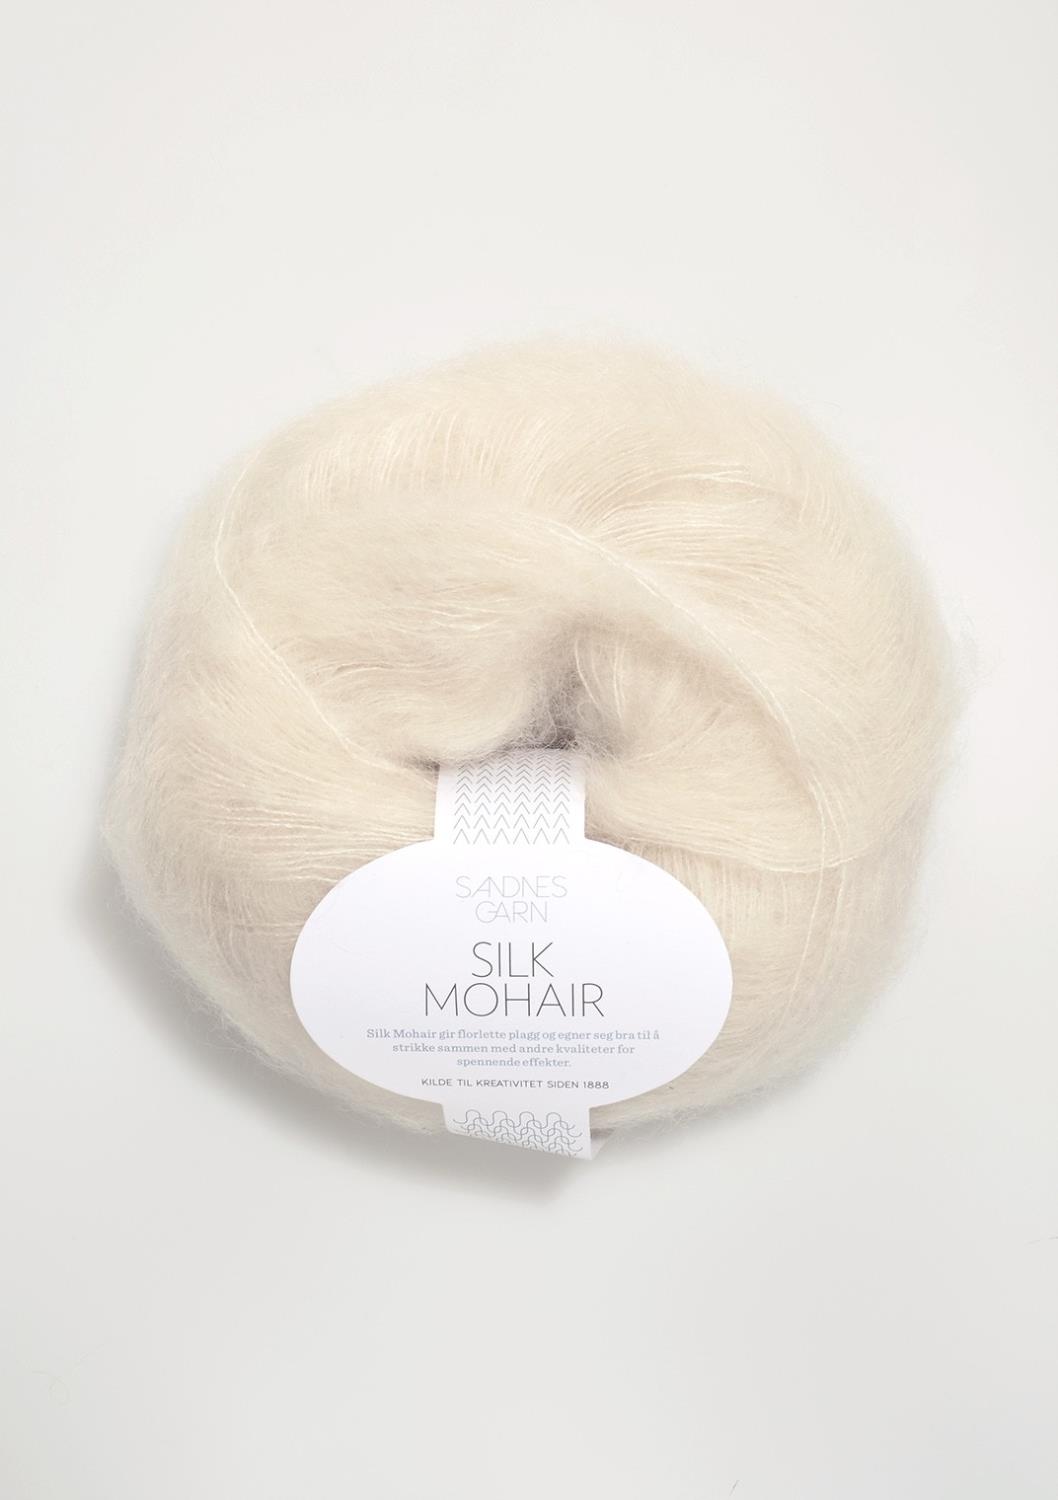 Silk Mohair Sandnes 1012 - Natur